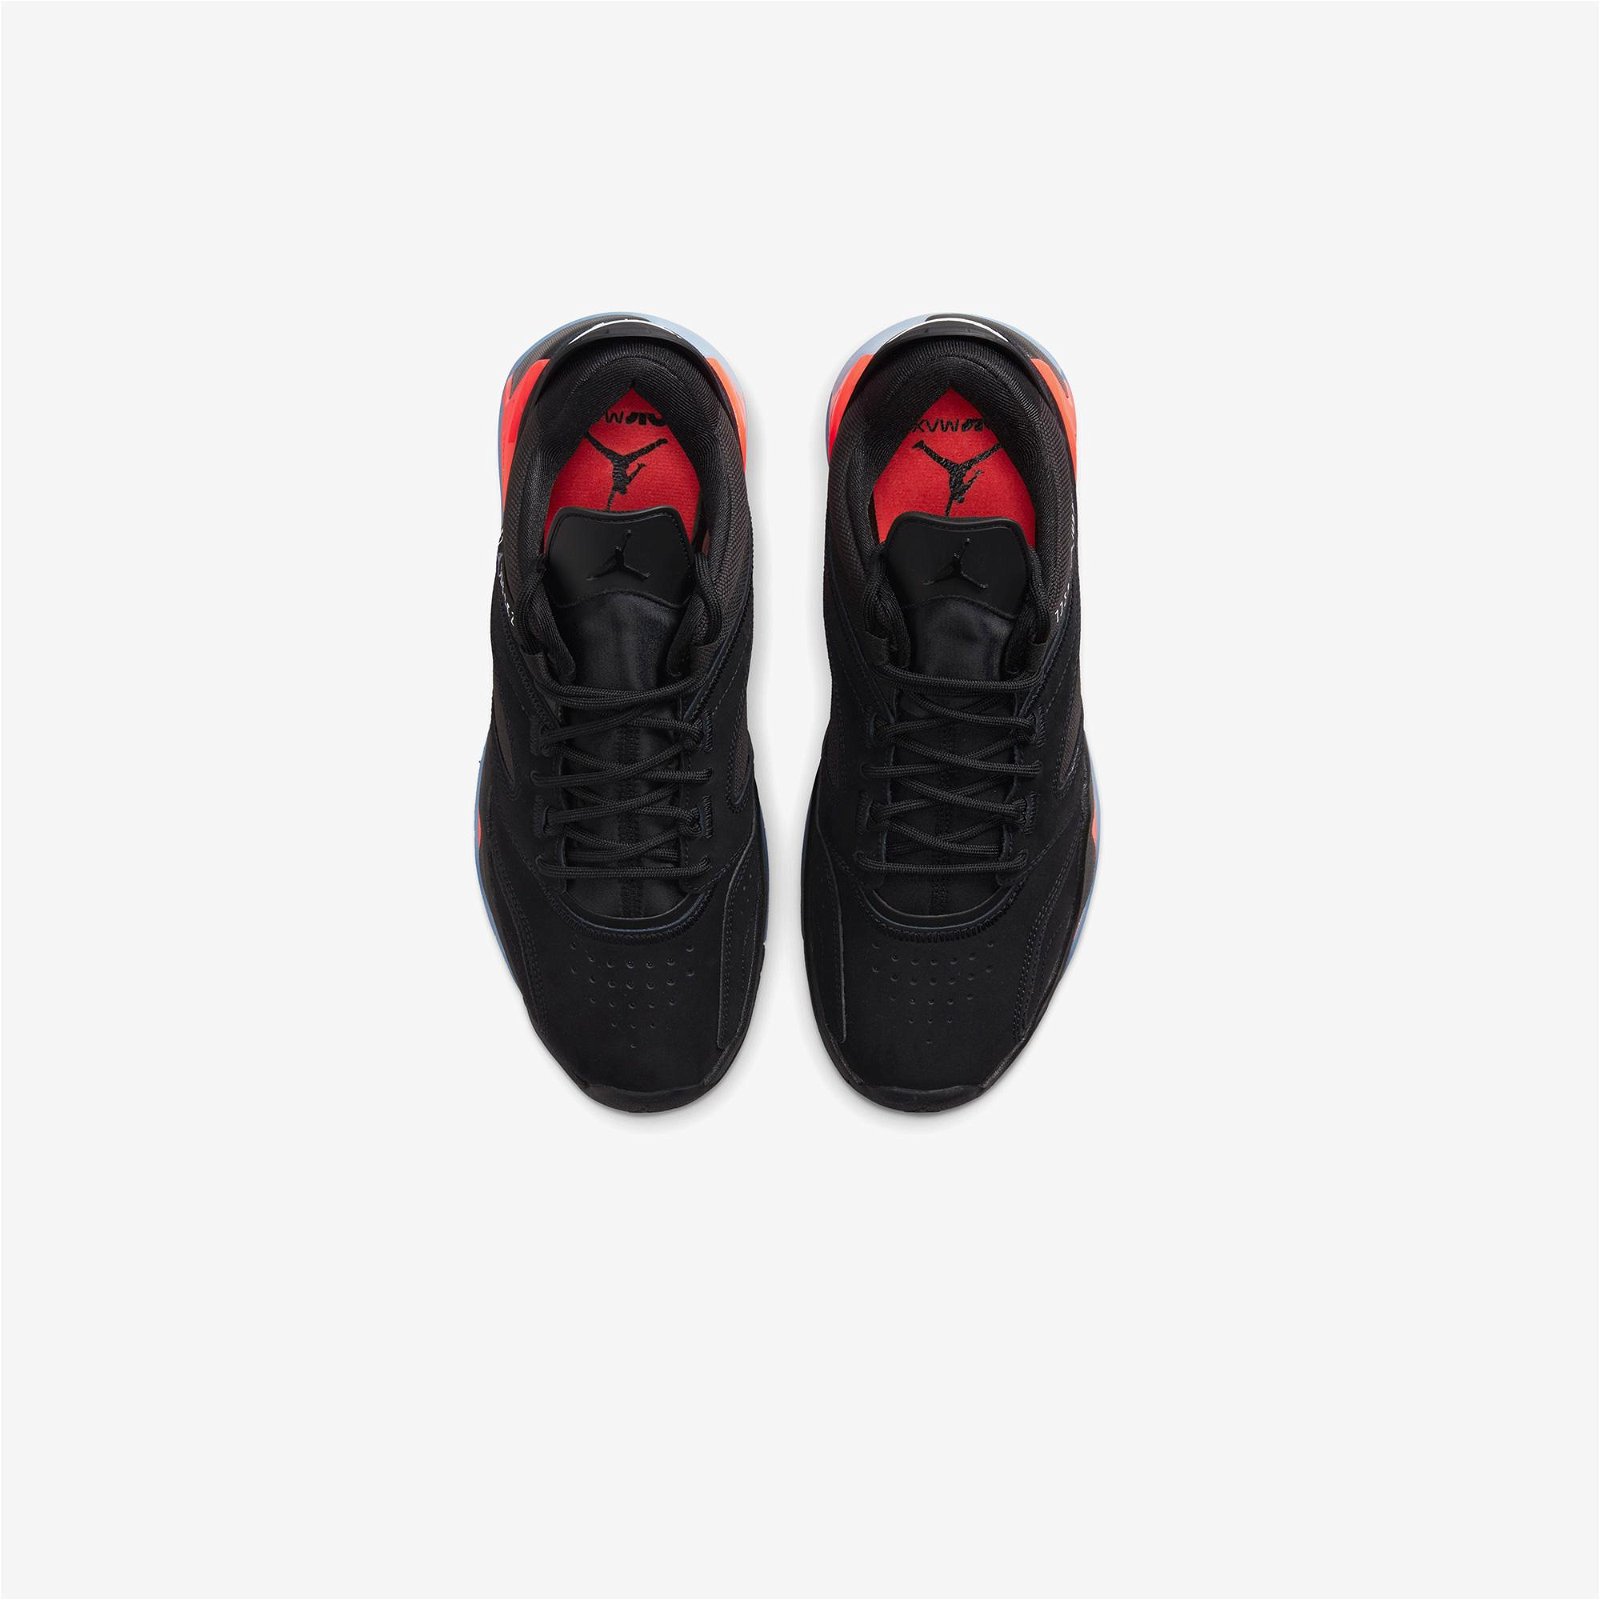 Jordan Point Lane Erkek Siyah-Kırmızı Spor Ayakkabı